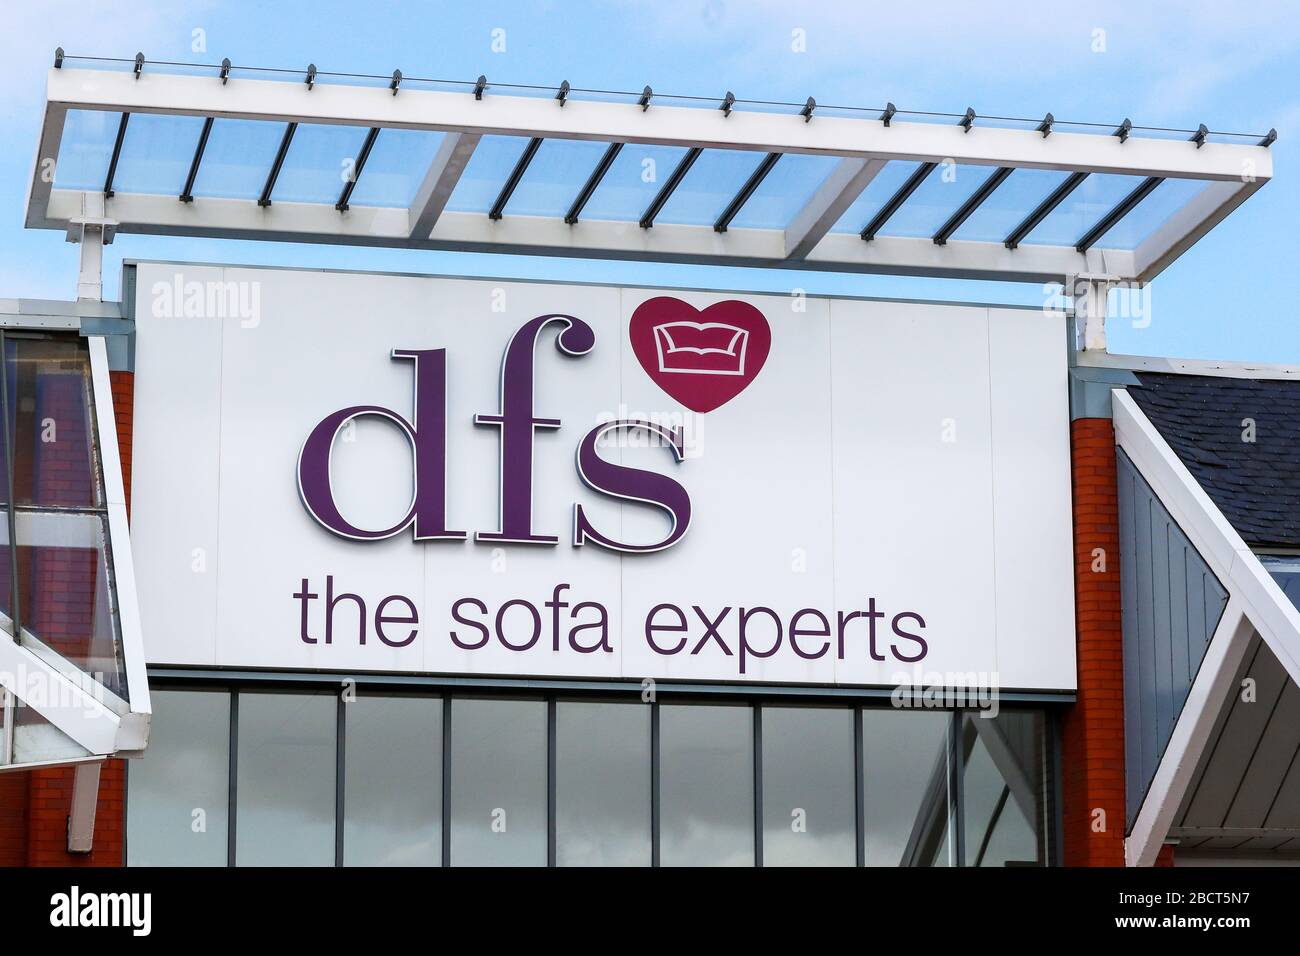 Voir le logo pour DFS le magasin de vente au détail de sofa experts, Prestwick, Royaume-Uni Banque D'Images